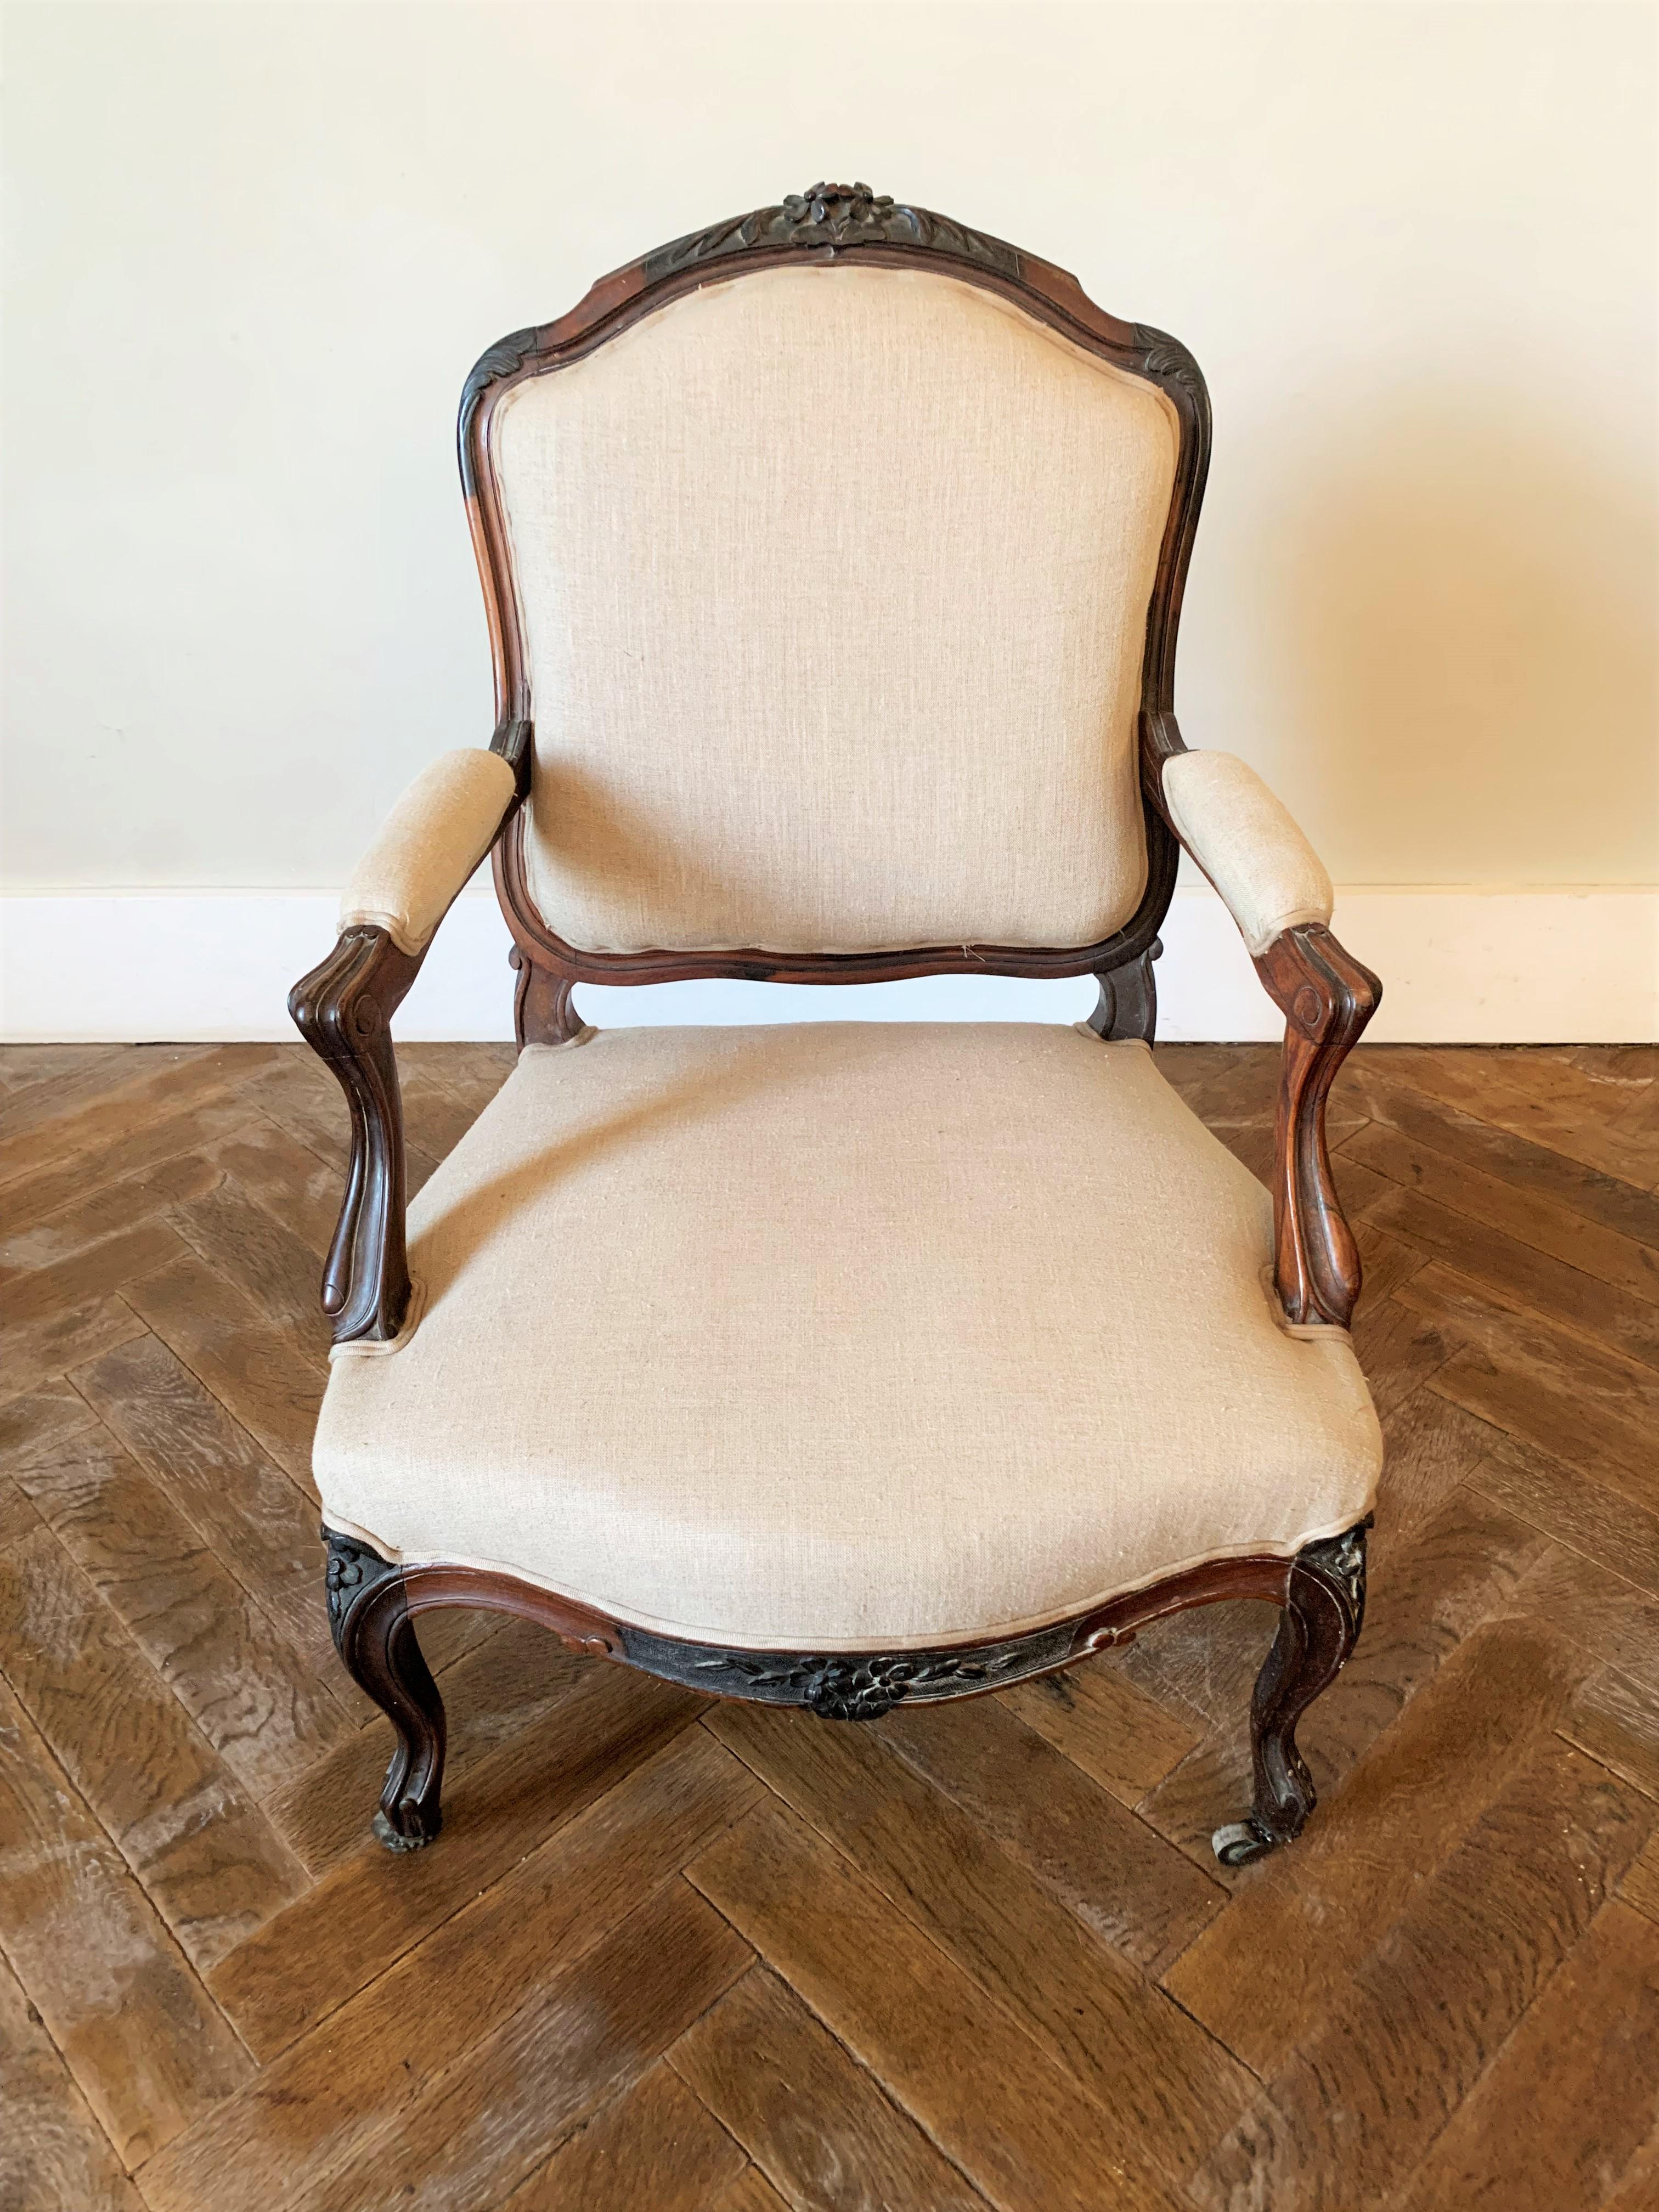 Magnifique fauteuil à la Reine de style Louis XV, richement sculpté de feuillages sur la traverse supérieure du dossier et de motifs floraux sur les pieds galbés. La finesse des sculptures présente des proportions élégantes qui font le charme de ce